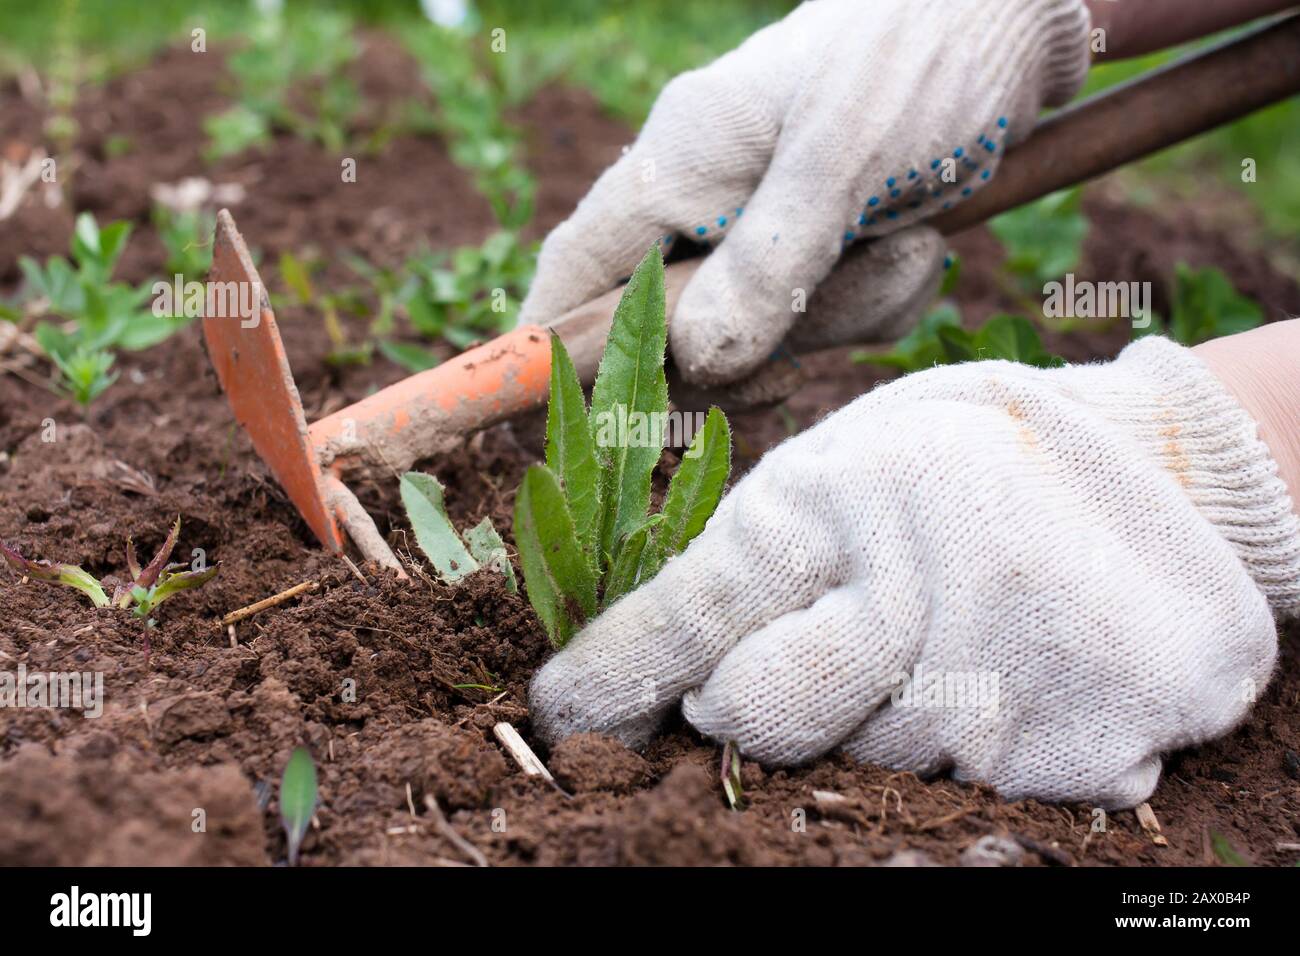 hands weeding  the vegetable garden Stock Photo